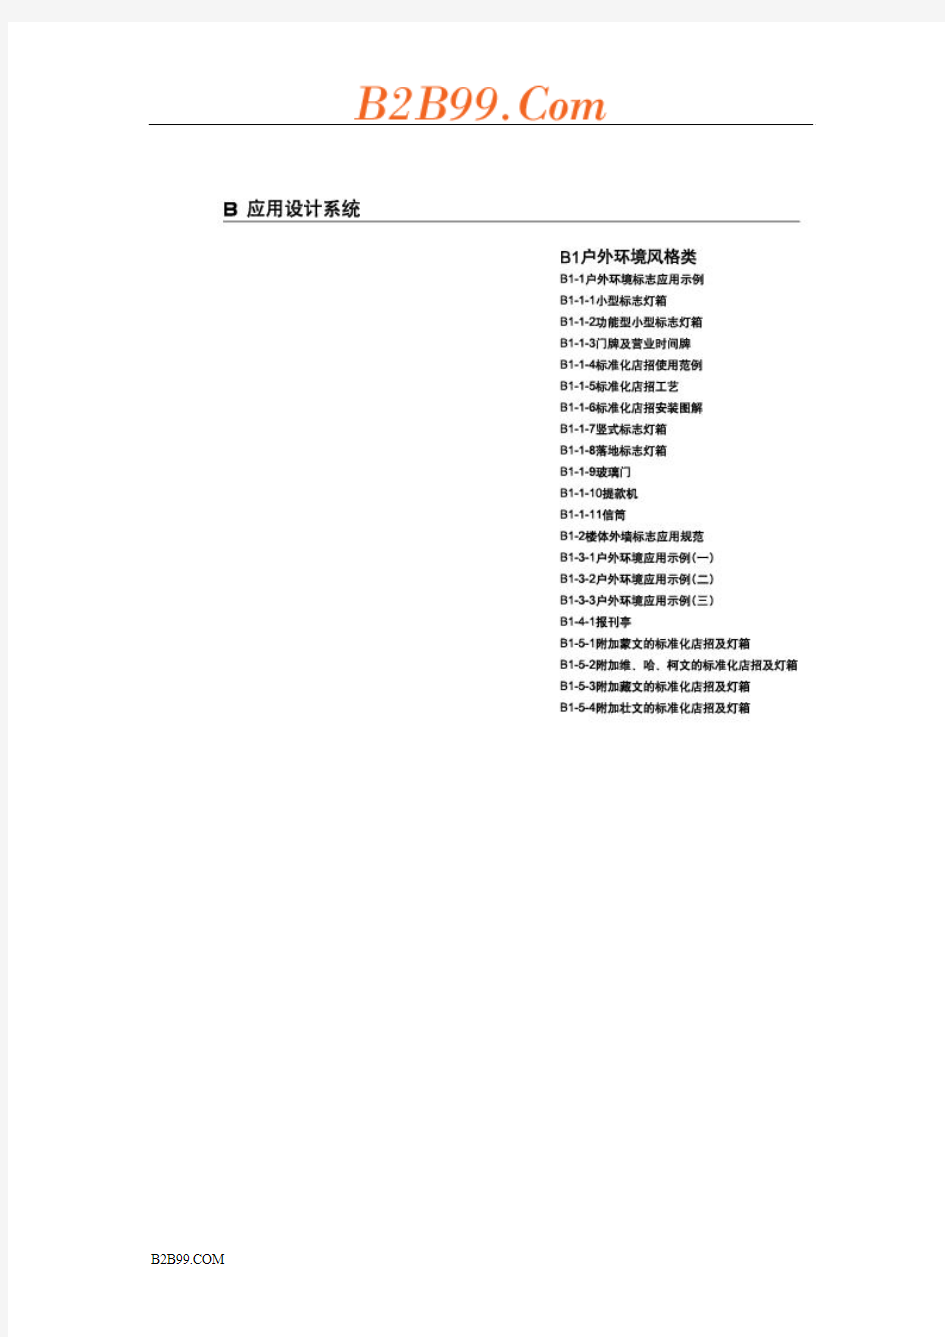 中国邮政企业形象管理手册B